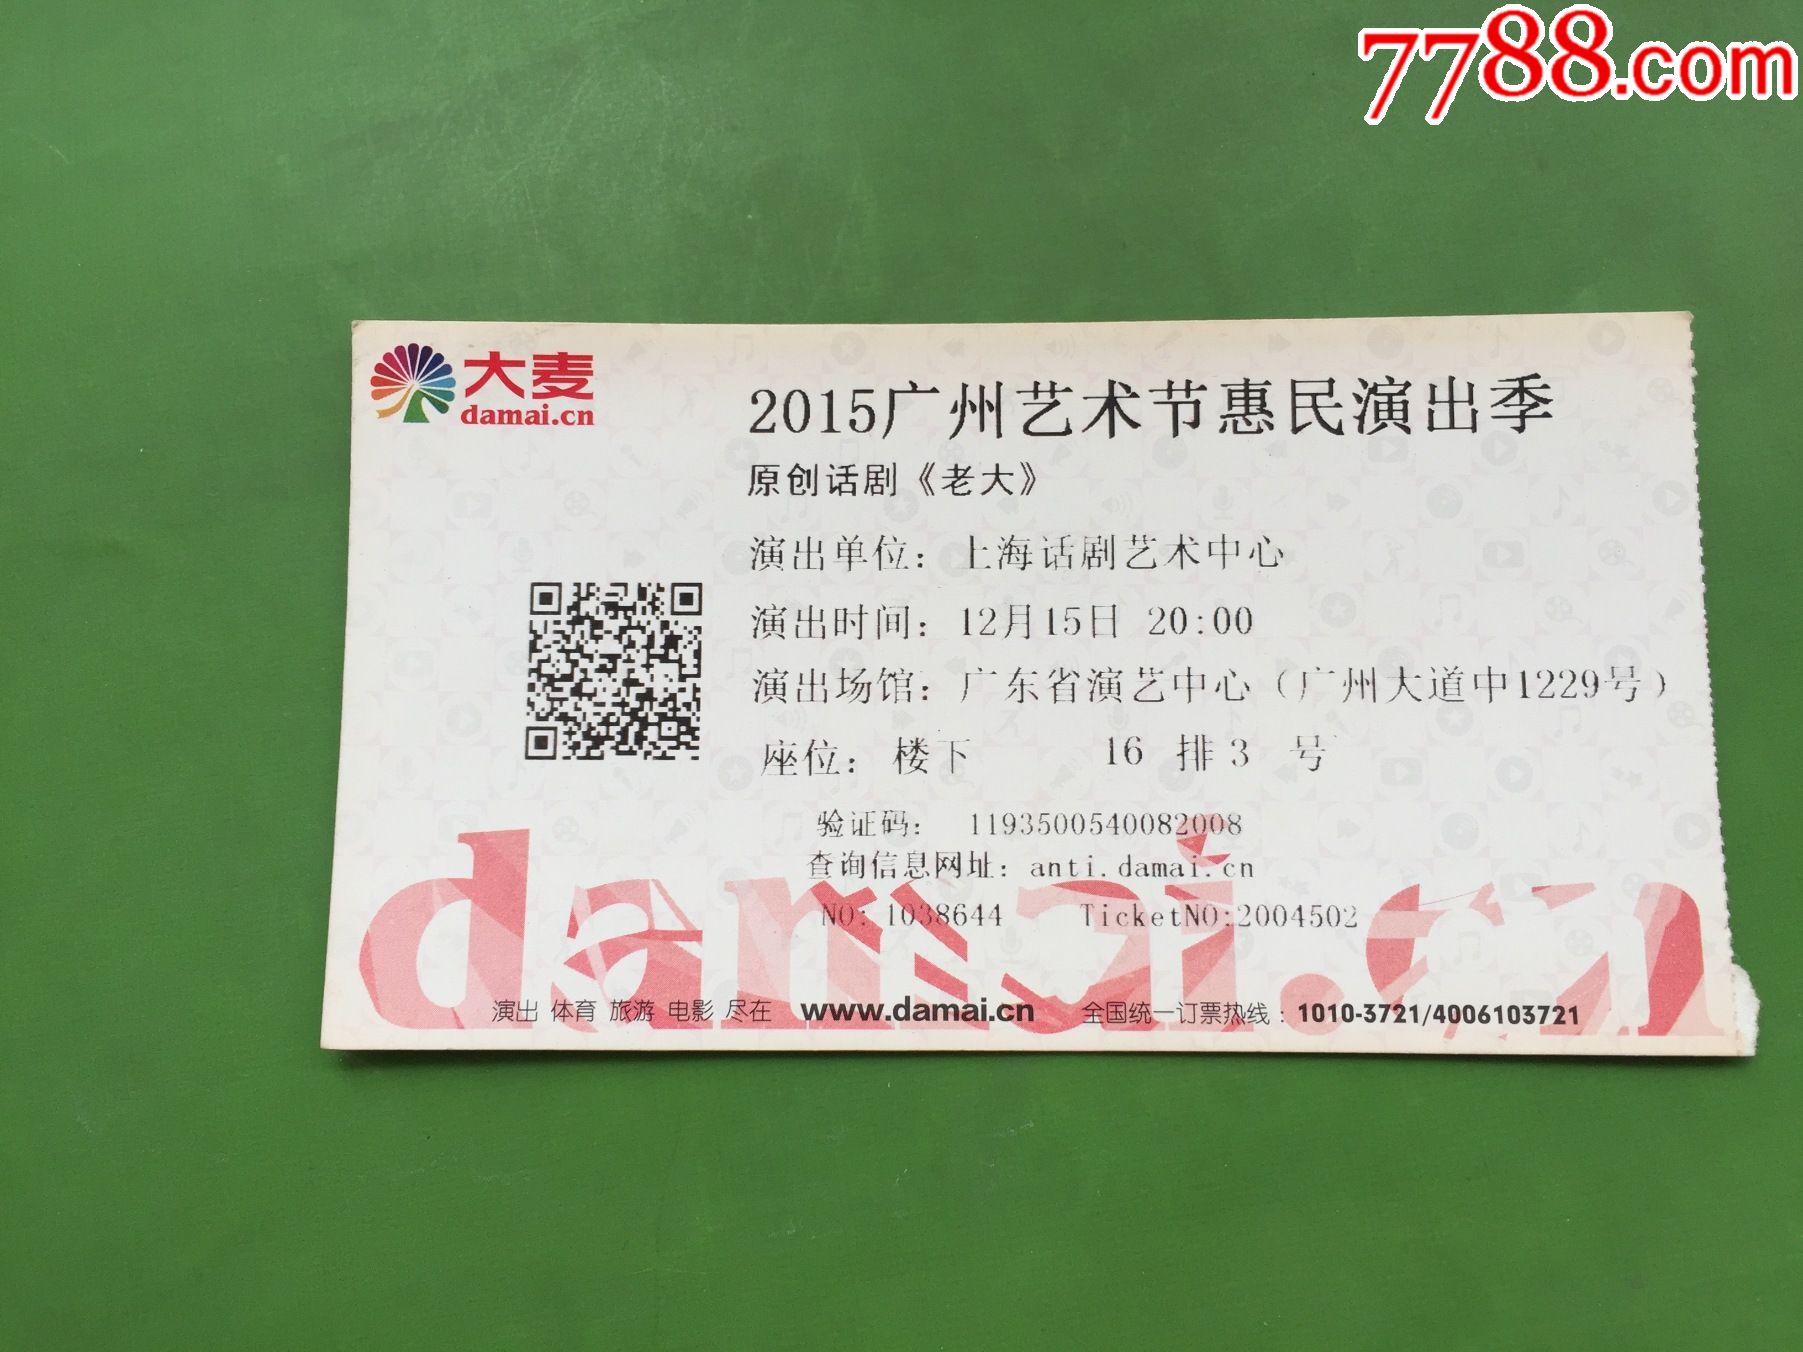 2015年广州艺术节惠民演出季原创话剧老大电子门票